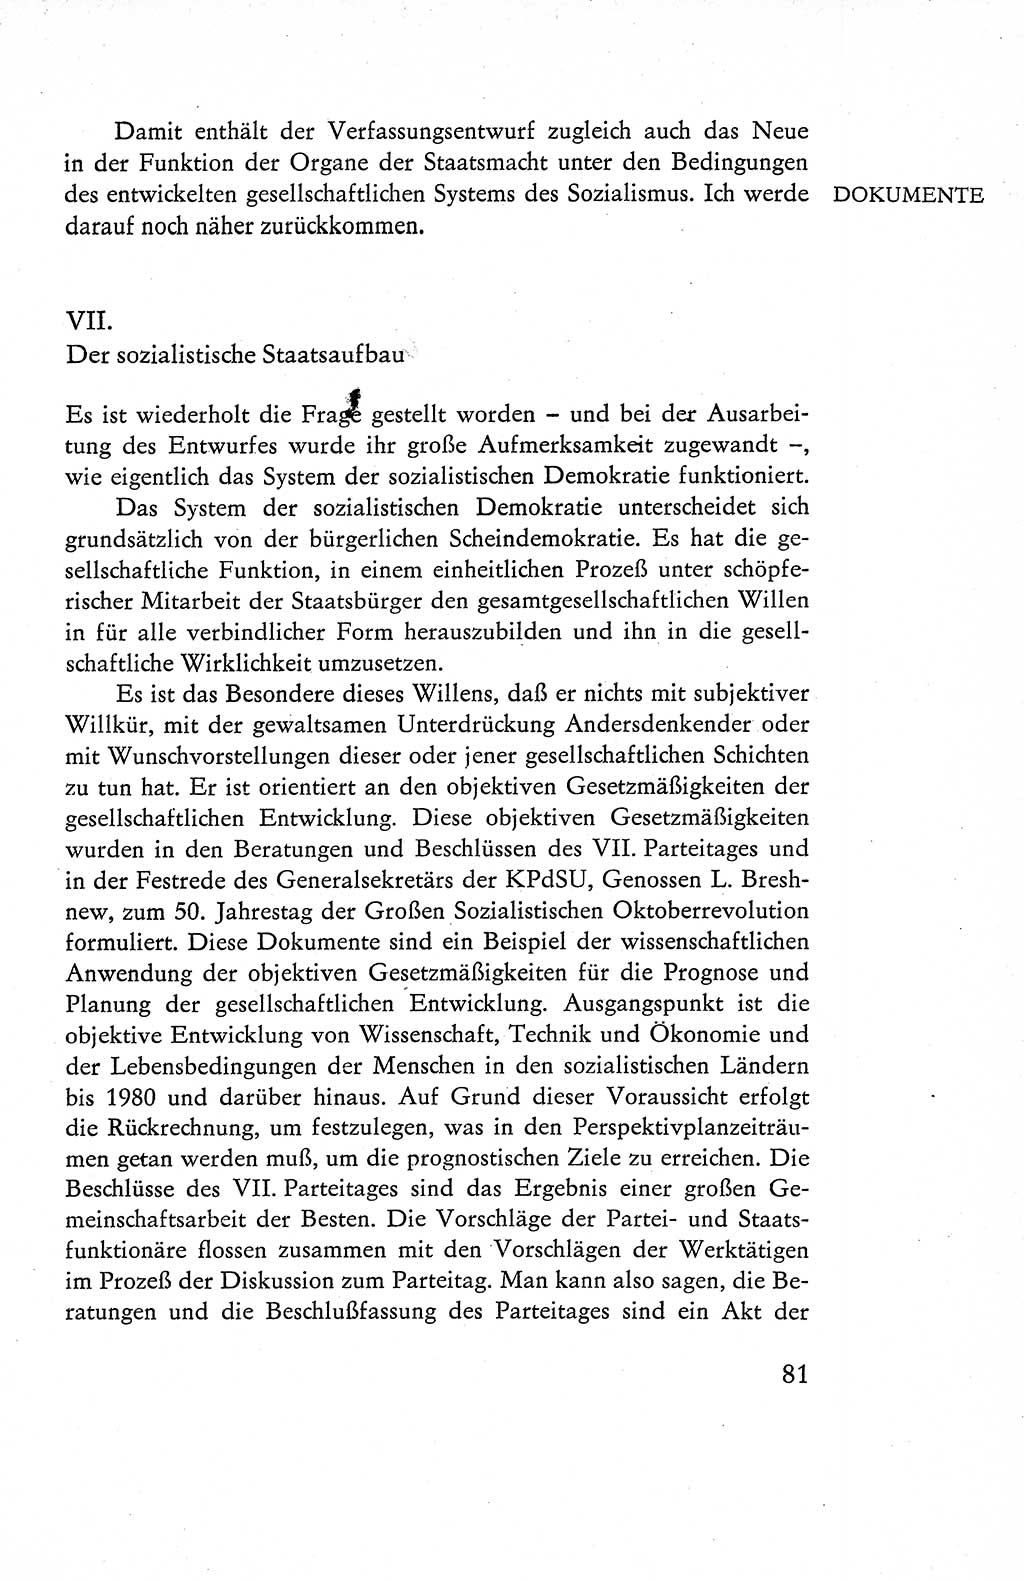 Verfassung der Deutschen Demokratischen Republik (DDR), Dokumente, Kommentar 1969, Band 1, Seite 81 (Verf. DDR Dok. Komm. 1969, Bd. 1, S. 81)